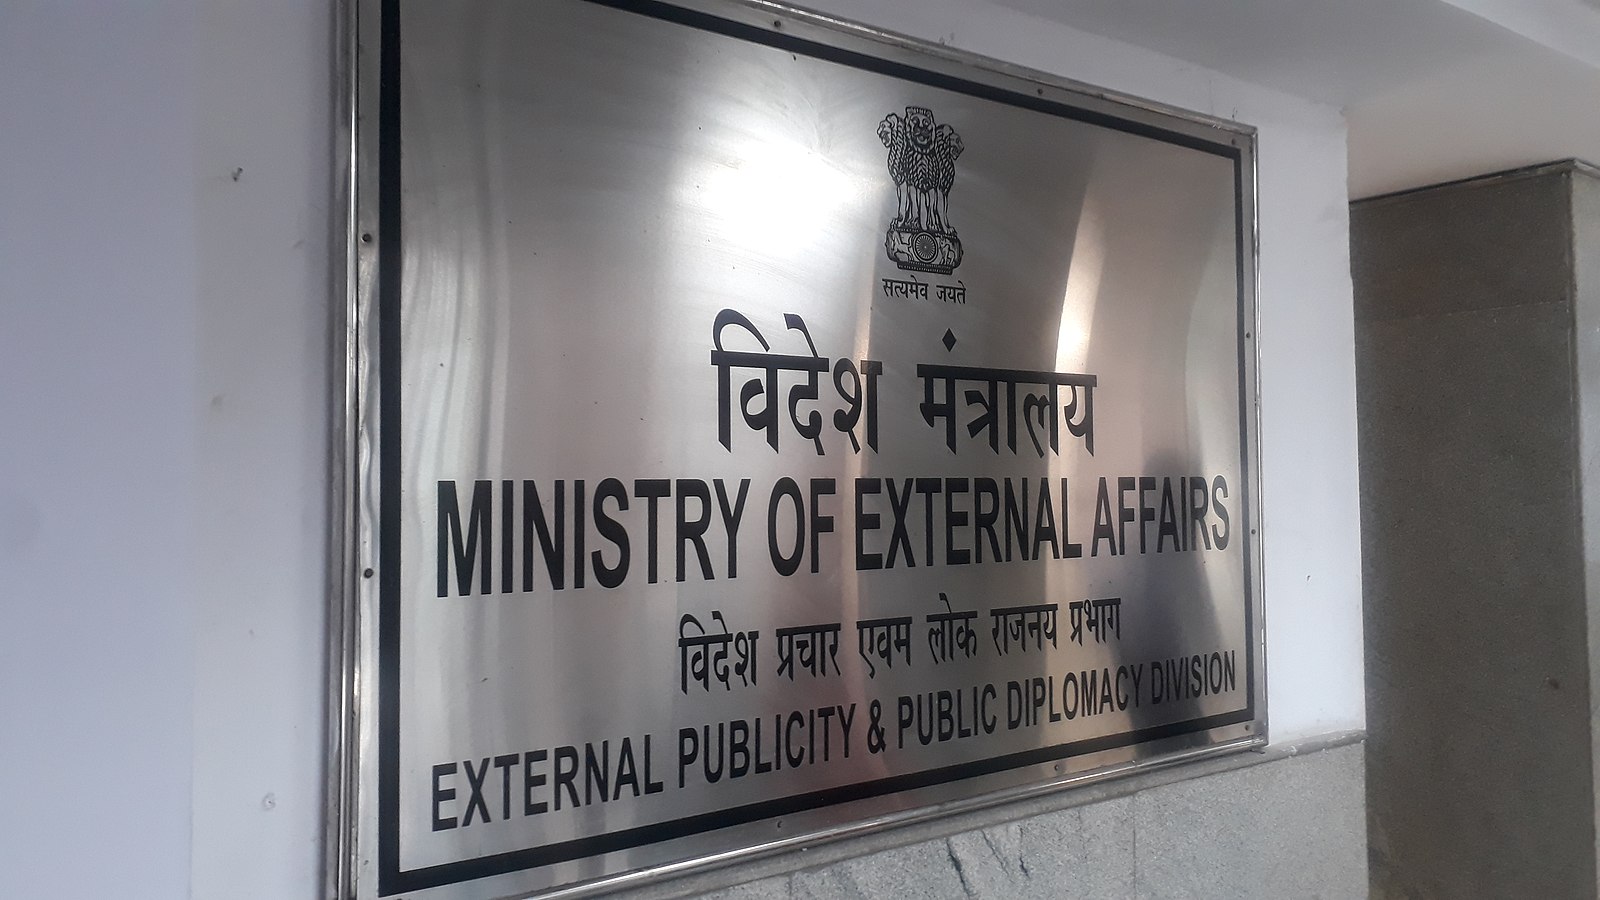 The Ministry of External Affairs (MEA) – विदेश मंत्रालय ने भारतीयों को अगली सूचना तक ईरान या इज़राइल की यात्रा न करने की सलाह दी है